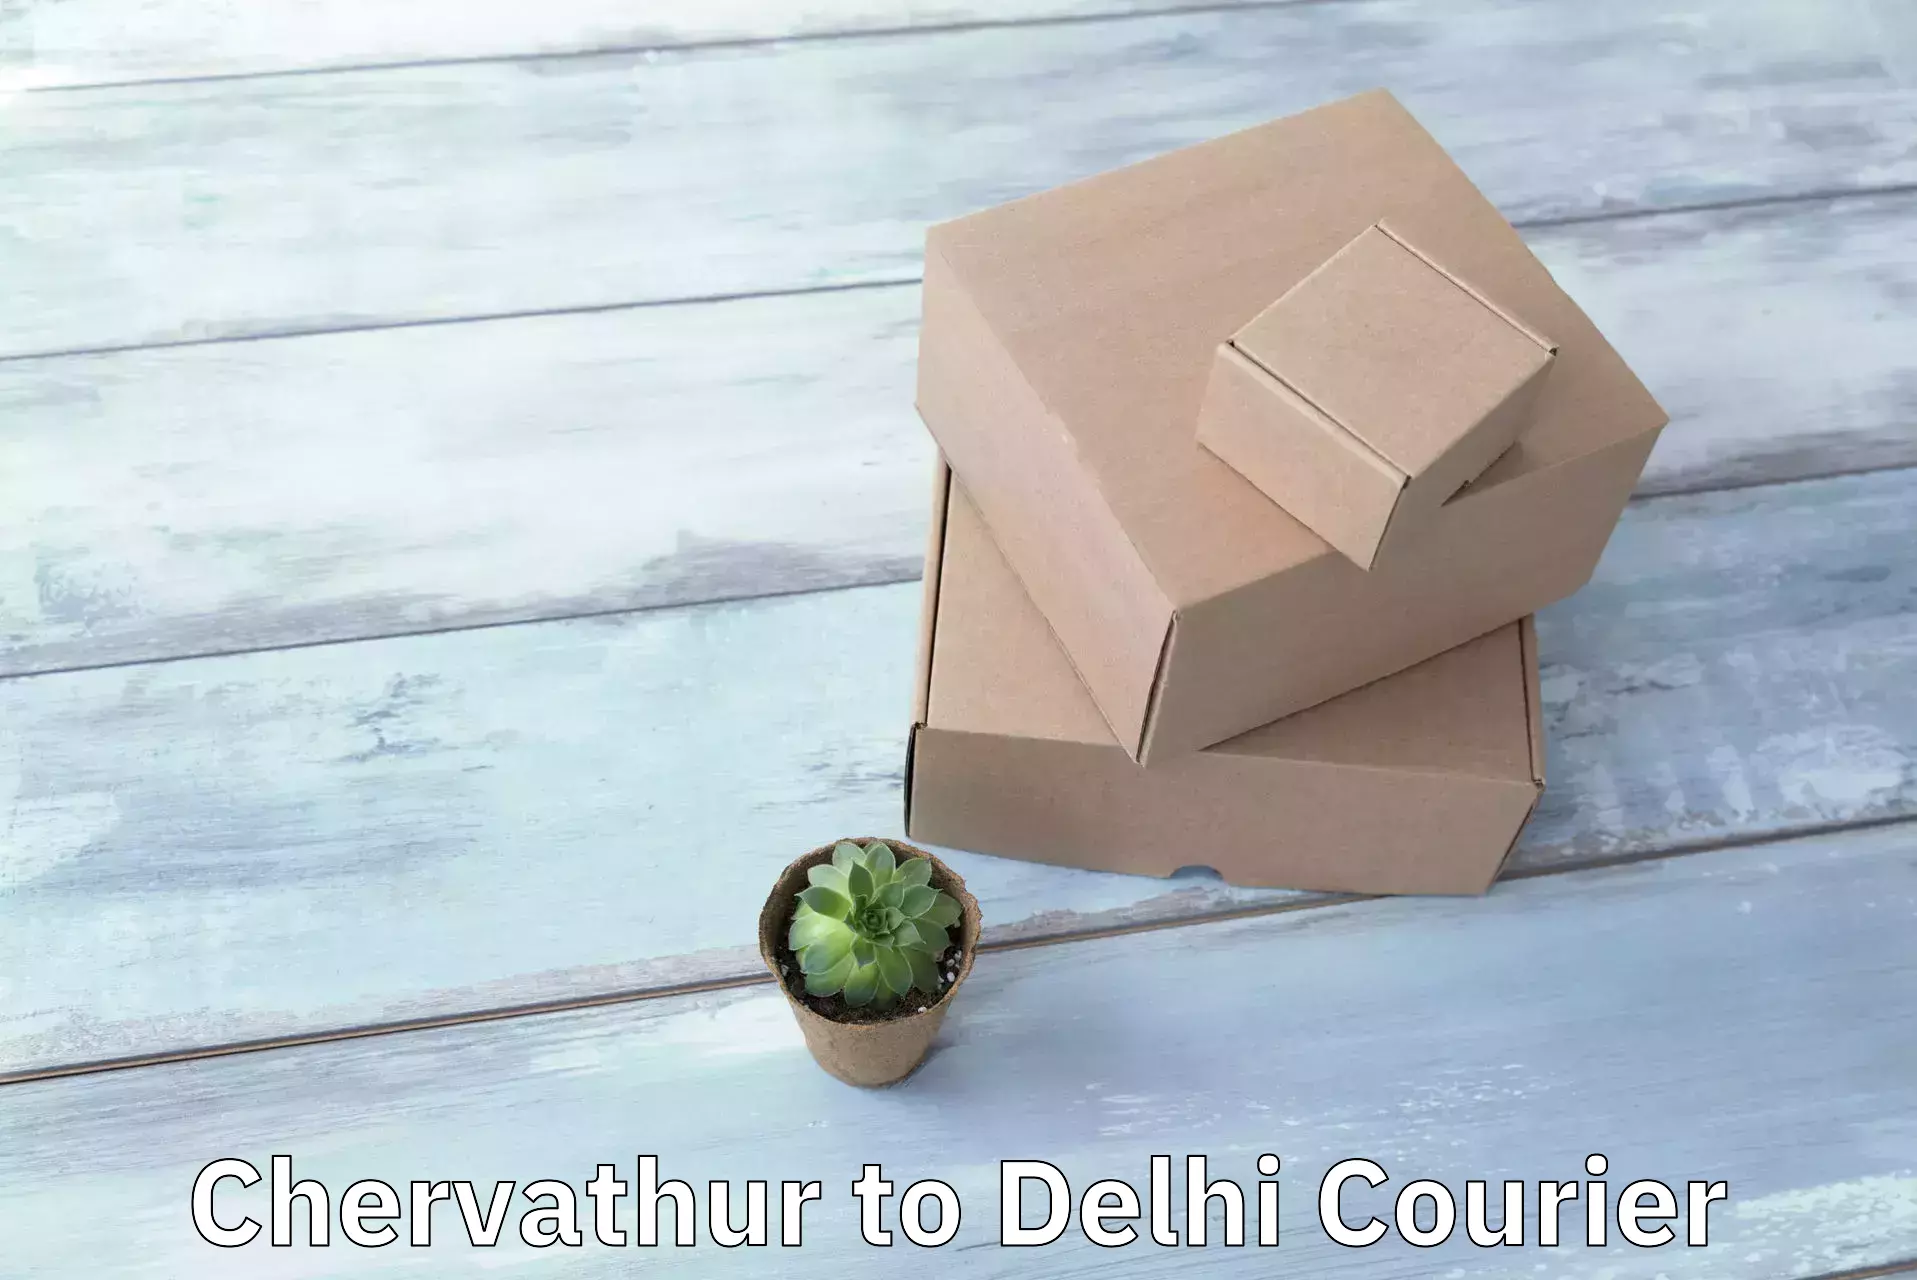 Express package delivery Chervathur to Jamia Millia Islamia New Delhi